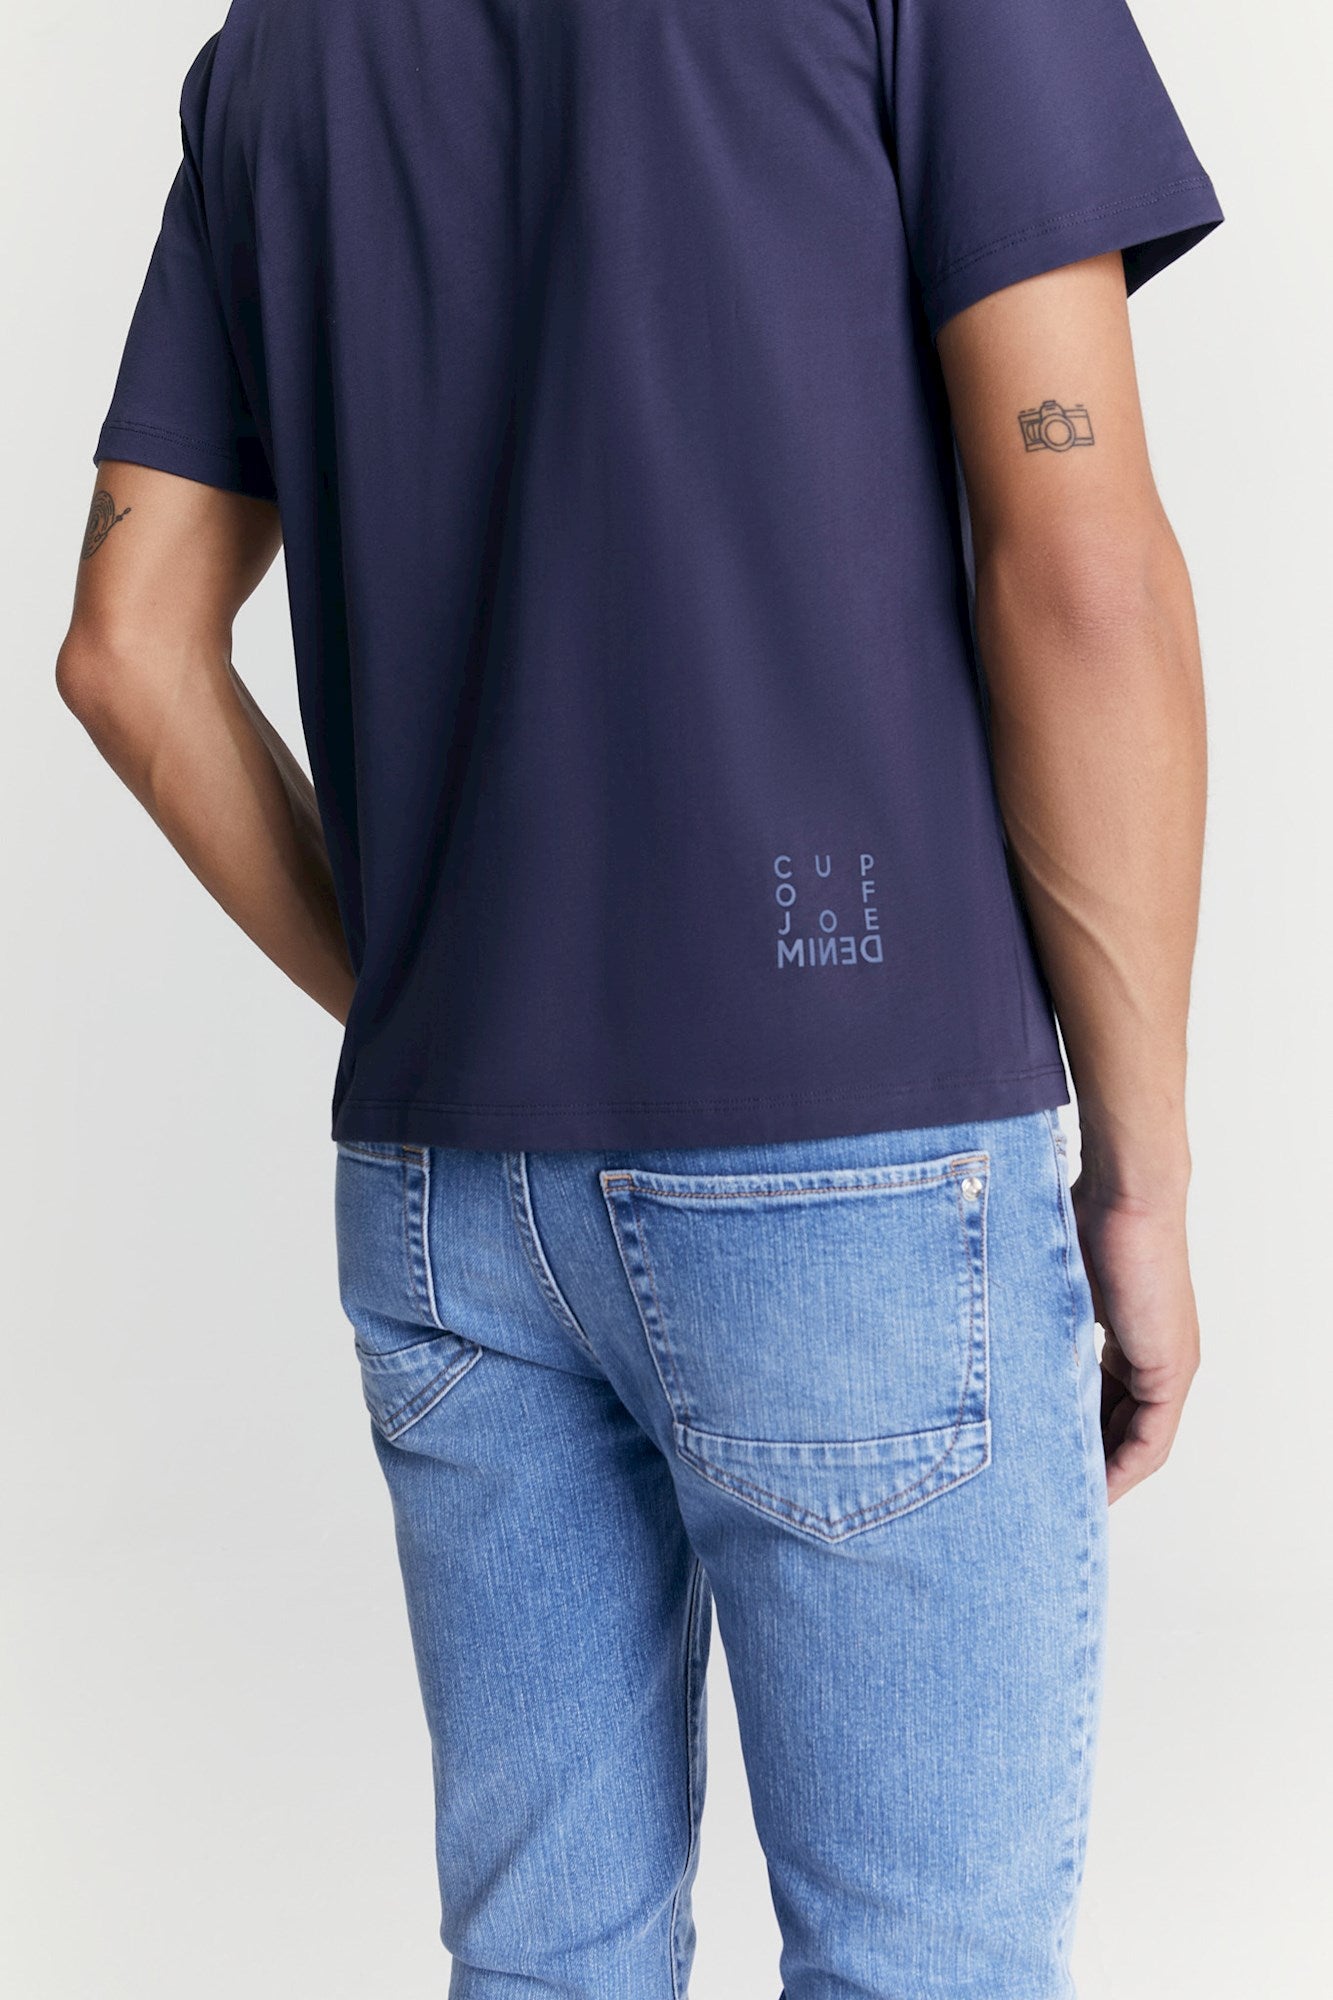 Fin - T Shirt - Navy